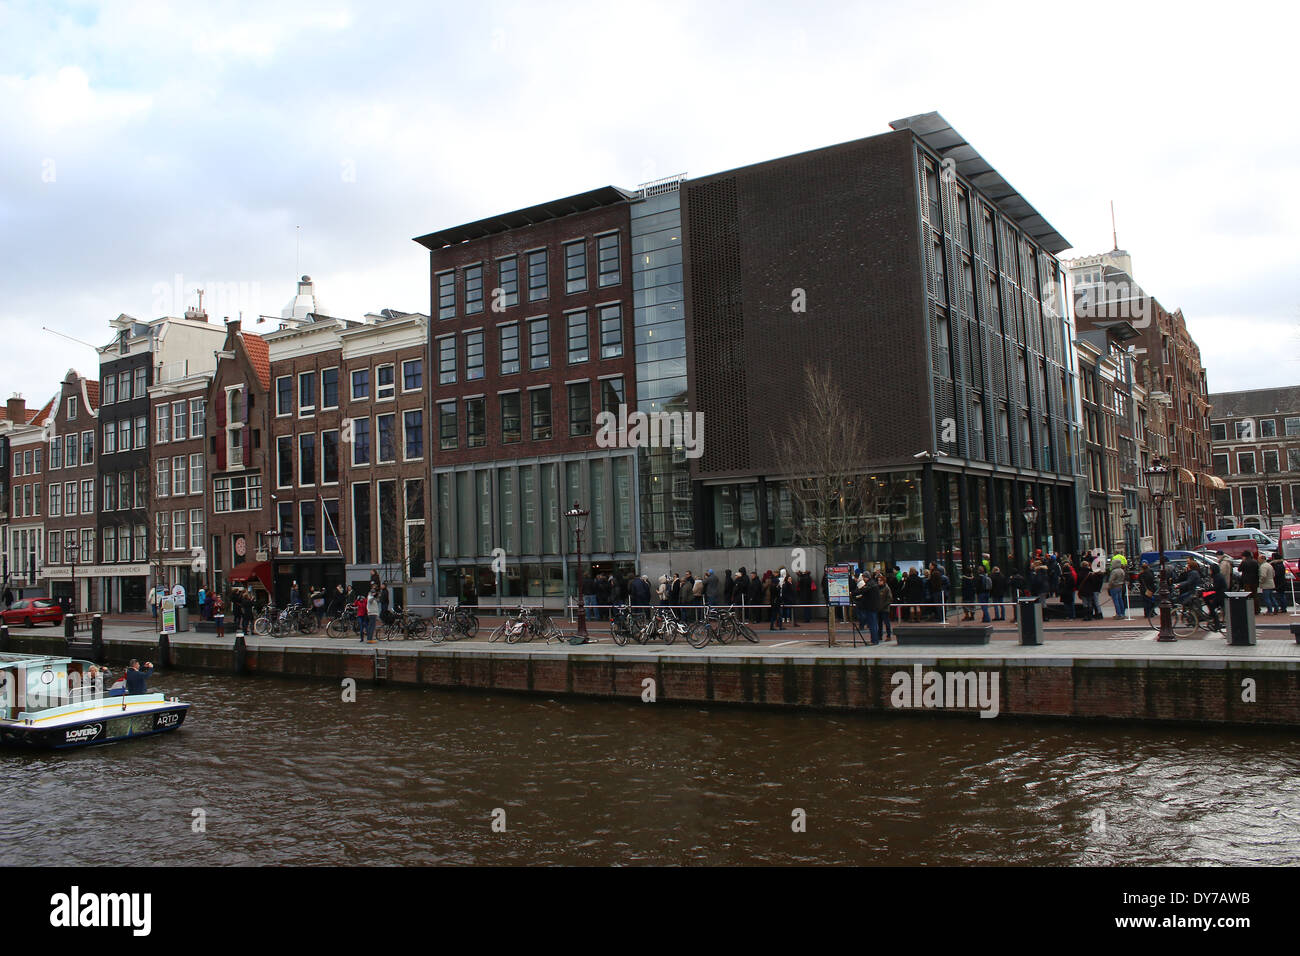 Les gens dans la file d'en face de la maison d'Anne Frank Musée (Achterhuis/annexe secrète) à canal Prinsengracht, Amsterdam Banque D'Images